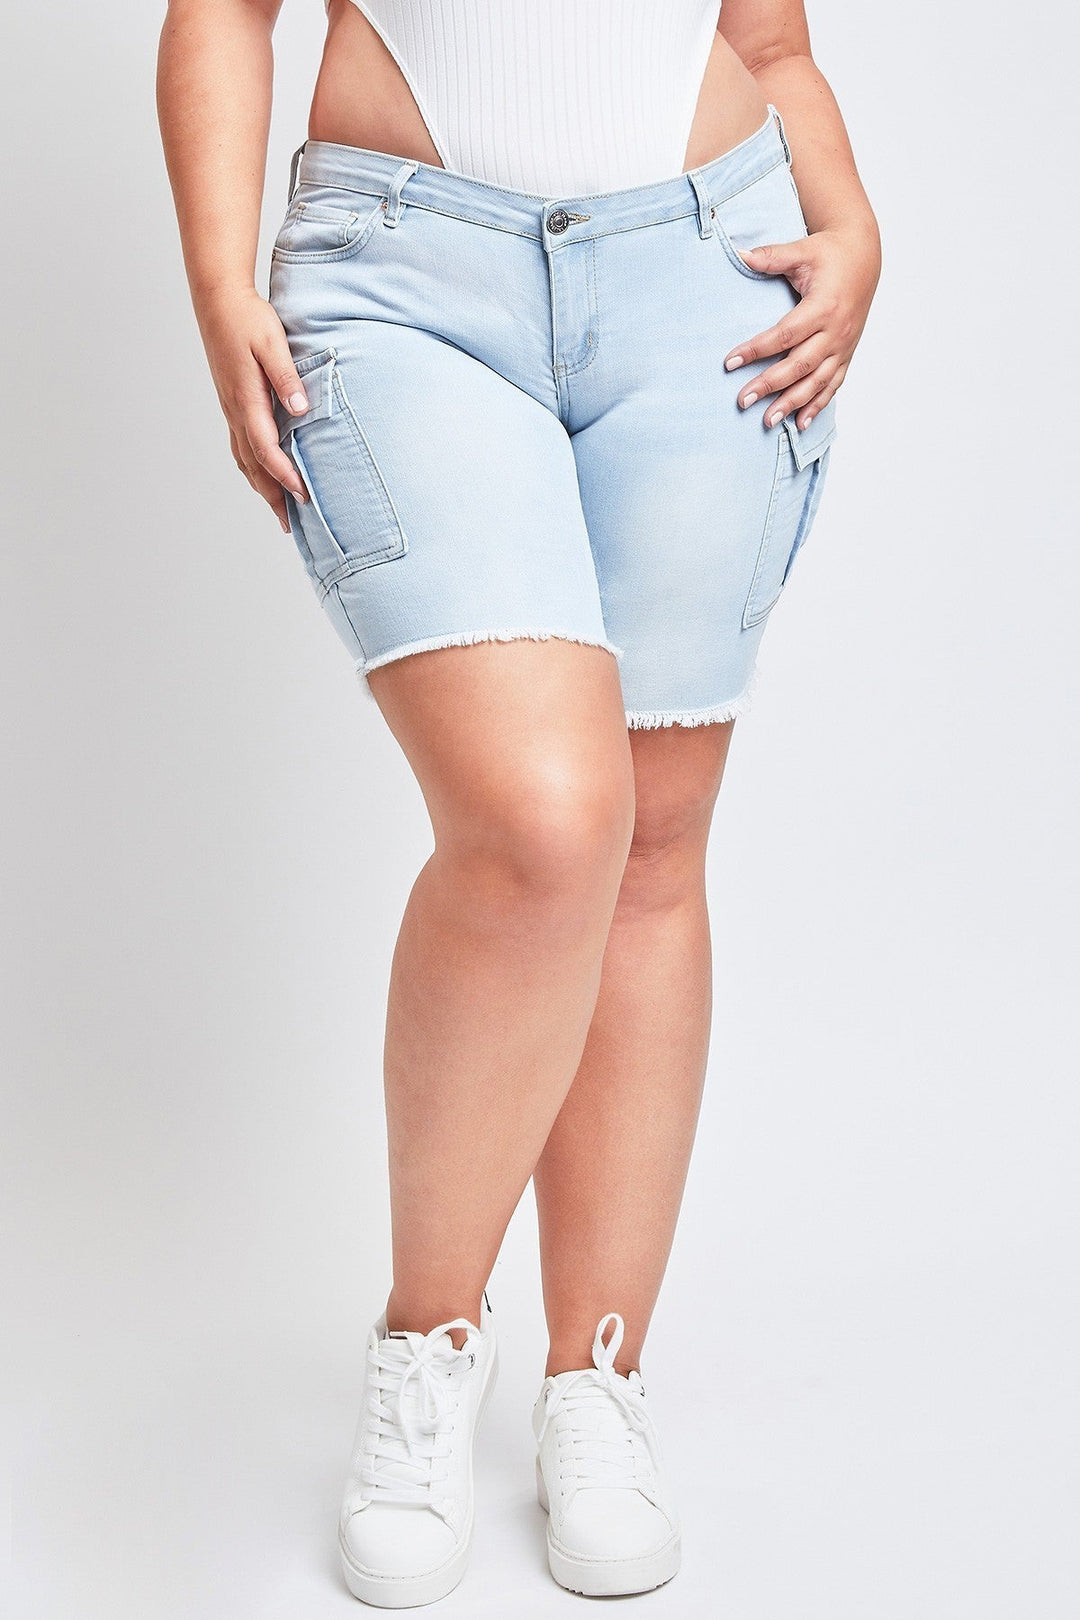 YMI Jeans Plus Size Tiffany Low Rise Cargo Bermuda W/Frayed Hem- Light Wash